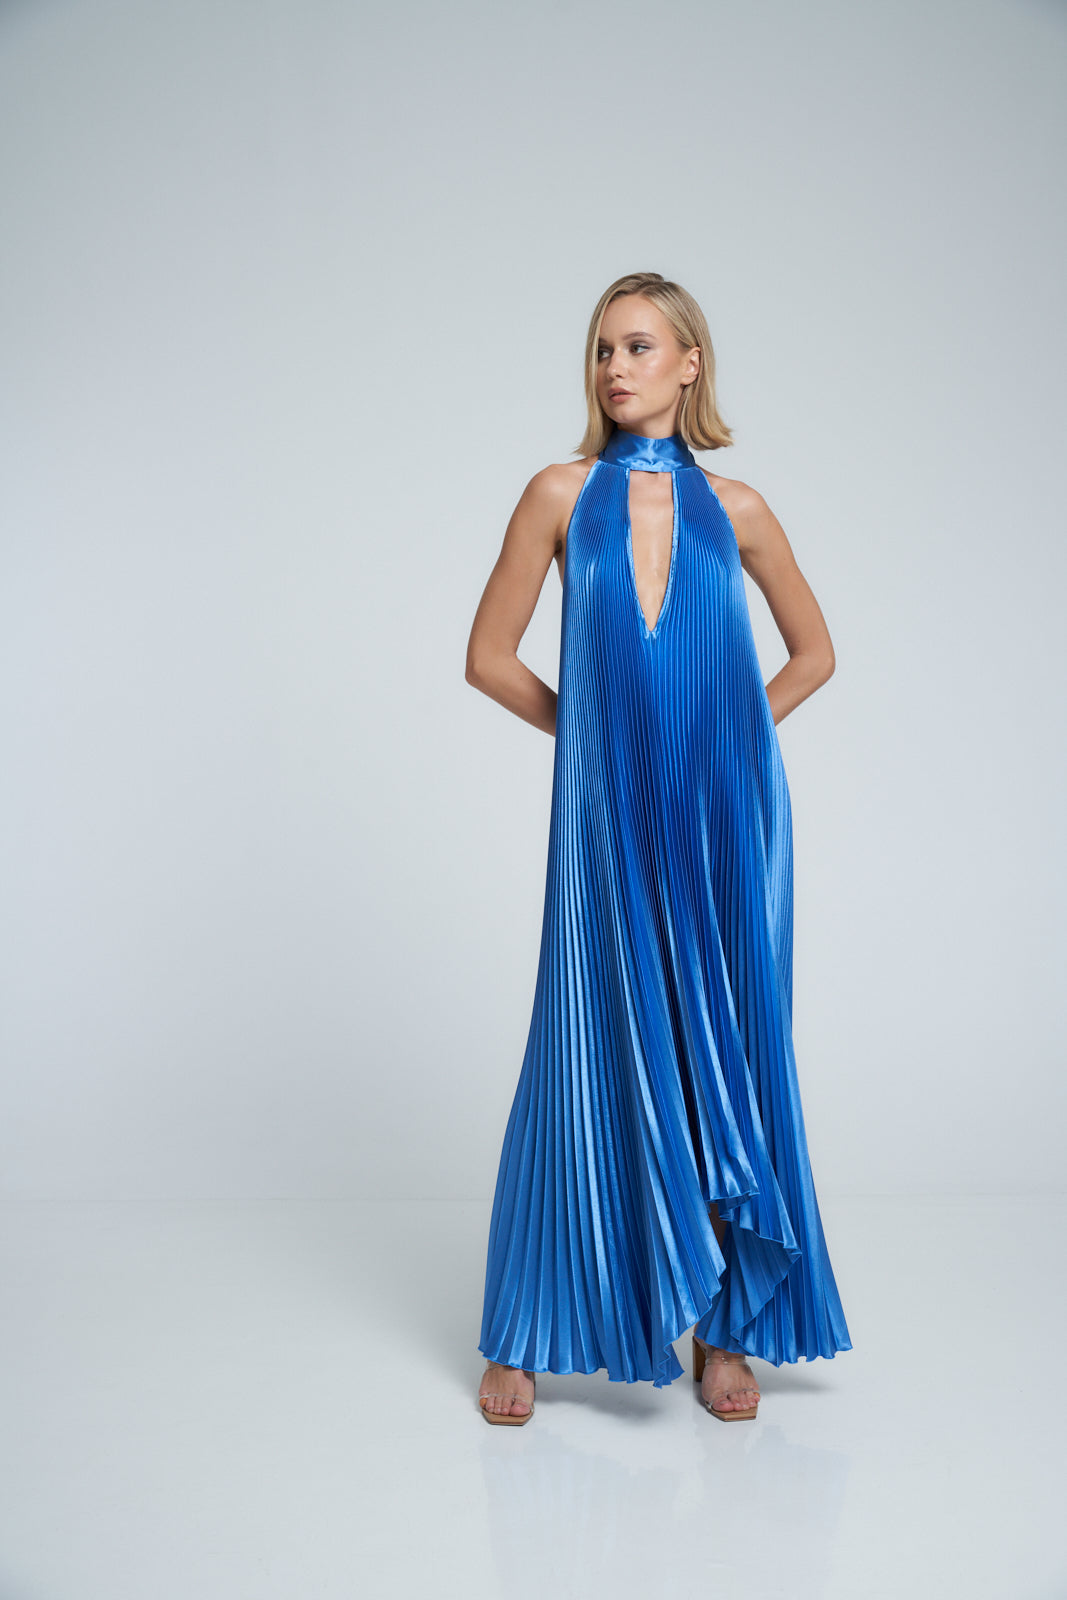 Opera Gown - Mediterranean Blue